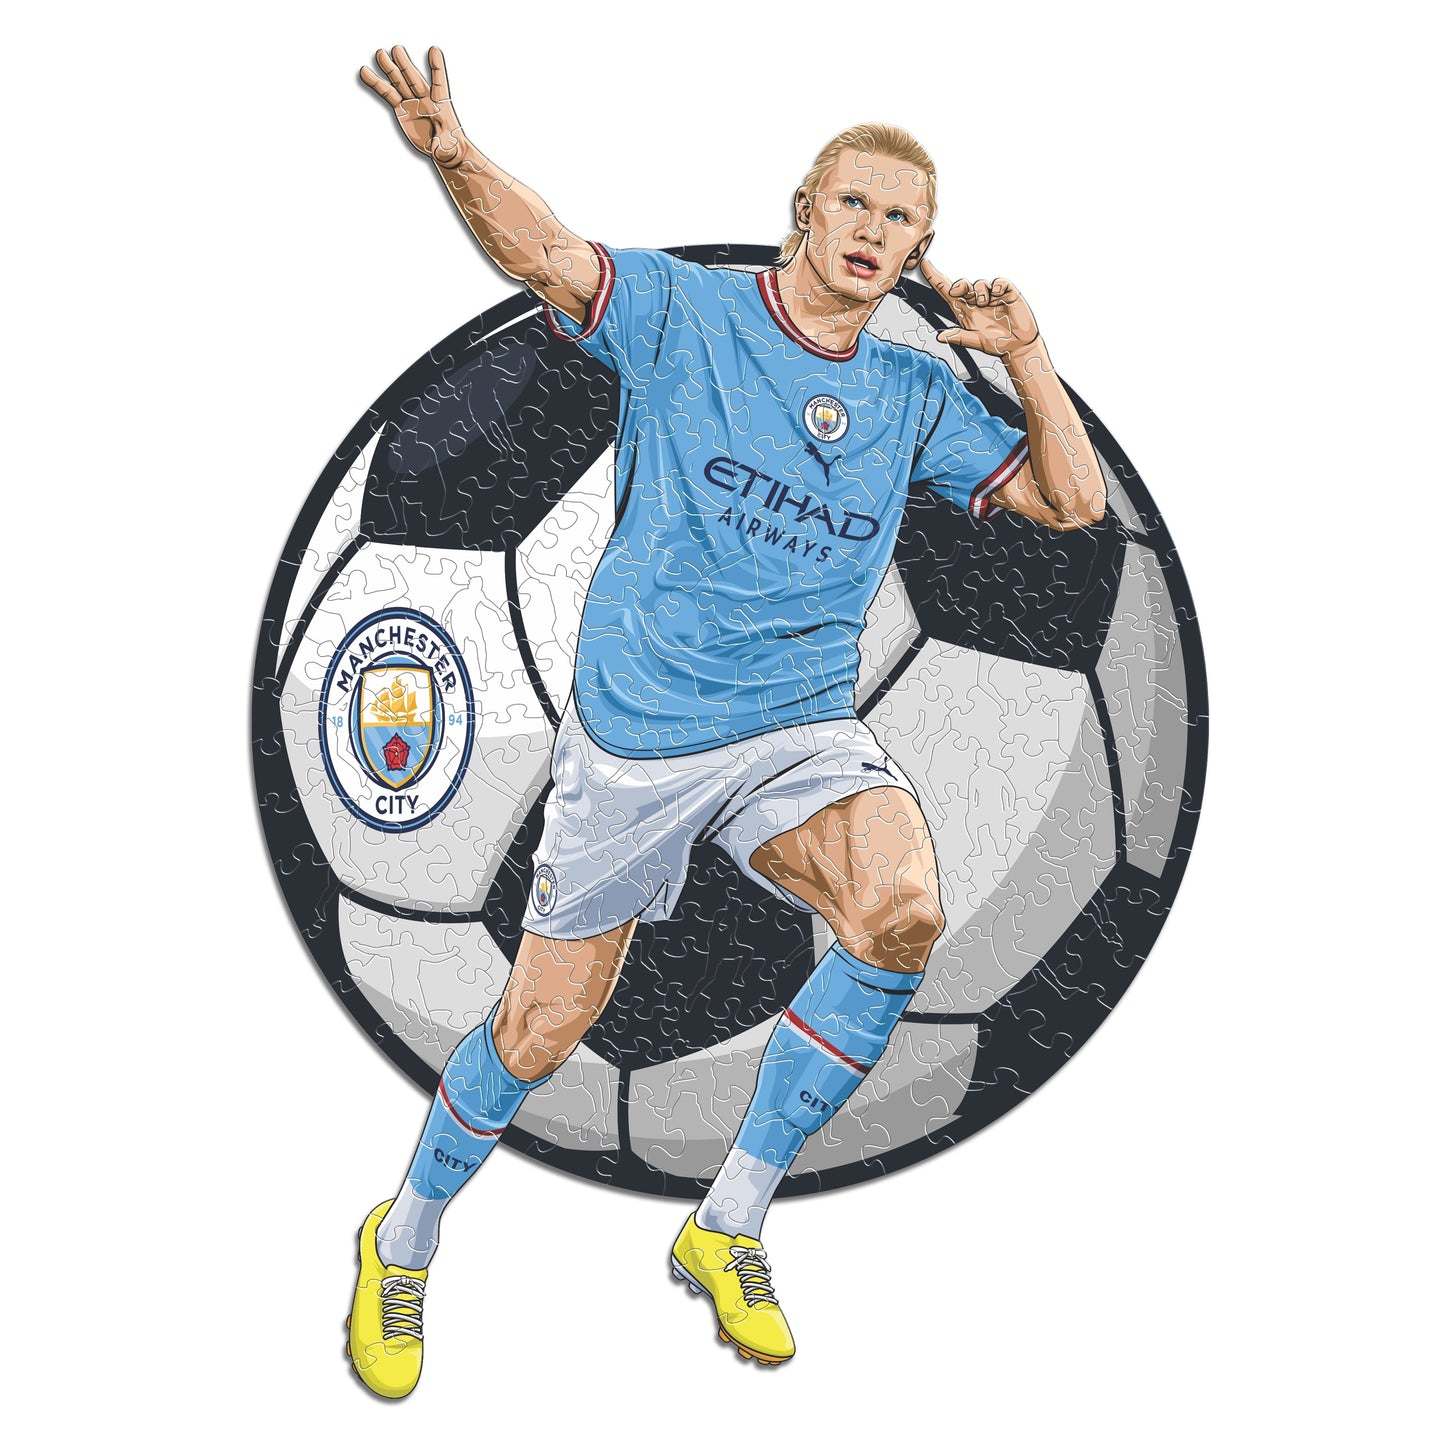 2 PACK Manchester City FC® Logo + Haaland